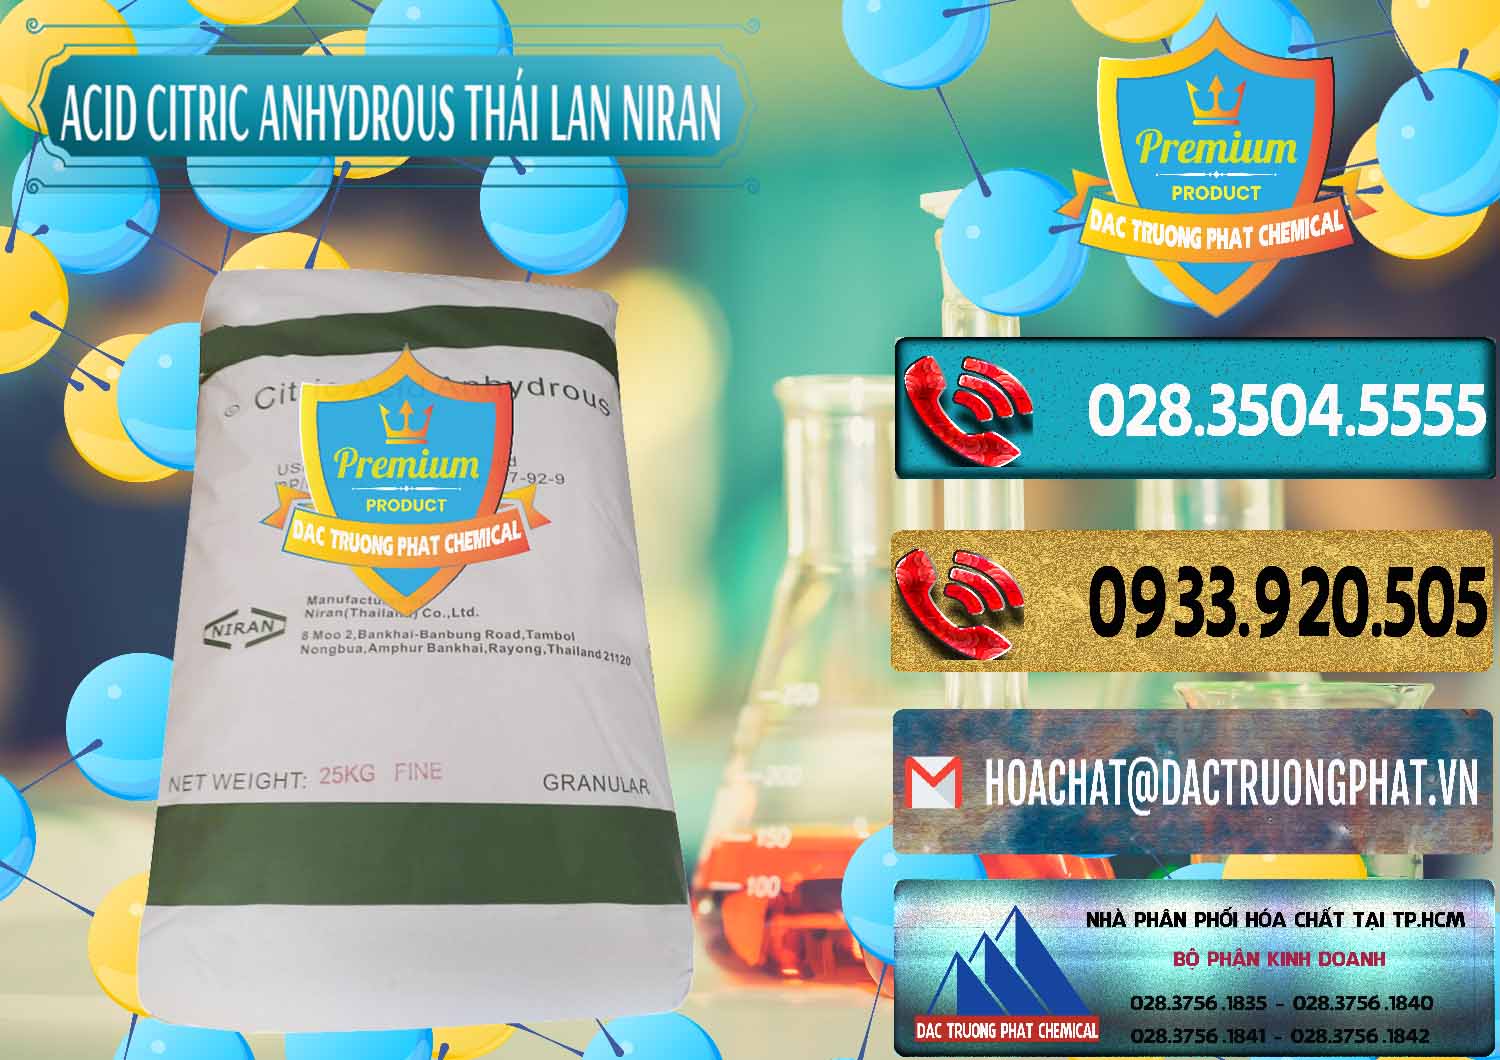 Đơn vị chuyên bán & cung ứng Acid Citric - Axit Citric Anhydrous - Thái Lan Niran - 0231 - Cty nhập khẩu và phân phối hóa chất tại TP.HCM - hoachatdetnhuom.com